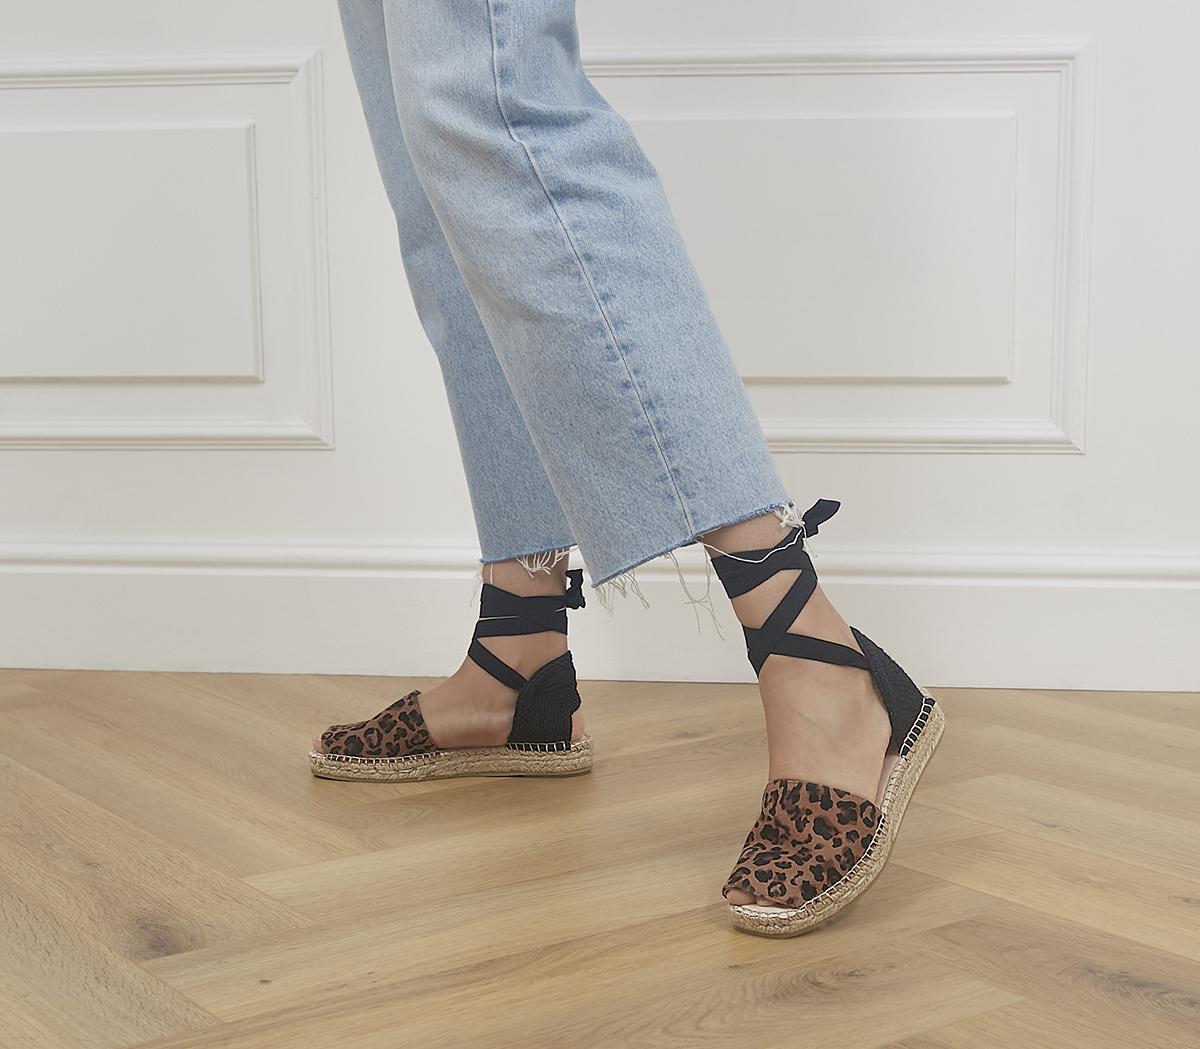 Gaimo for OFFICE Verbena Ankle Espadrilles Leopard Black - Women's Shoes